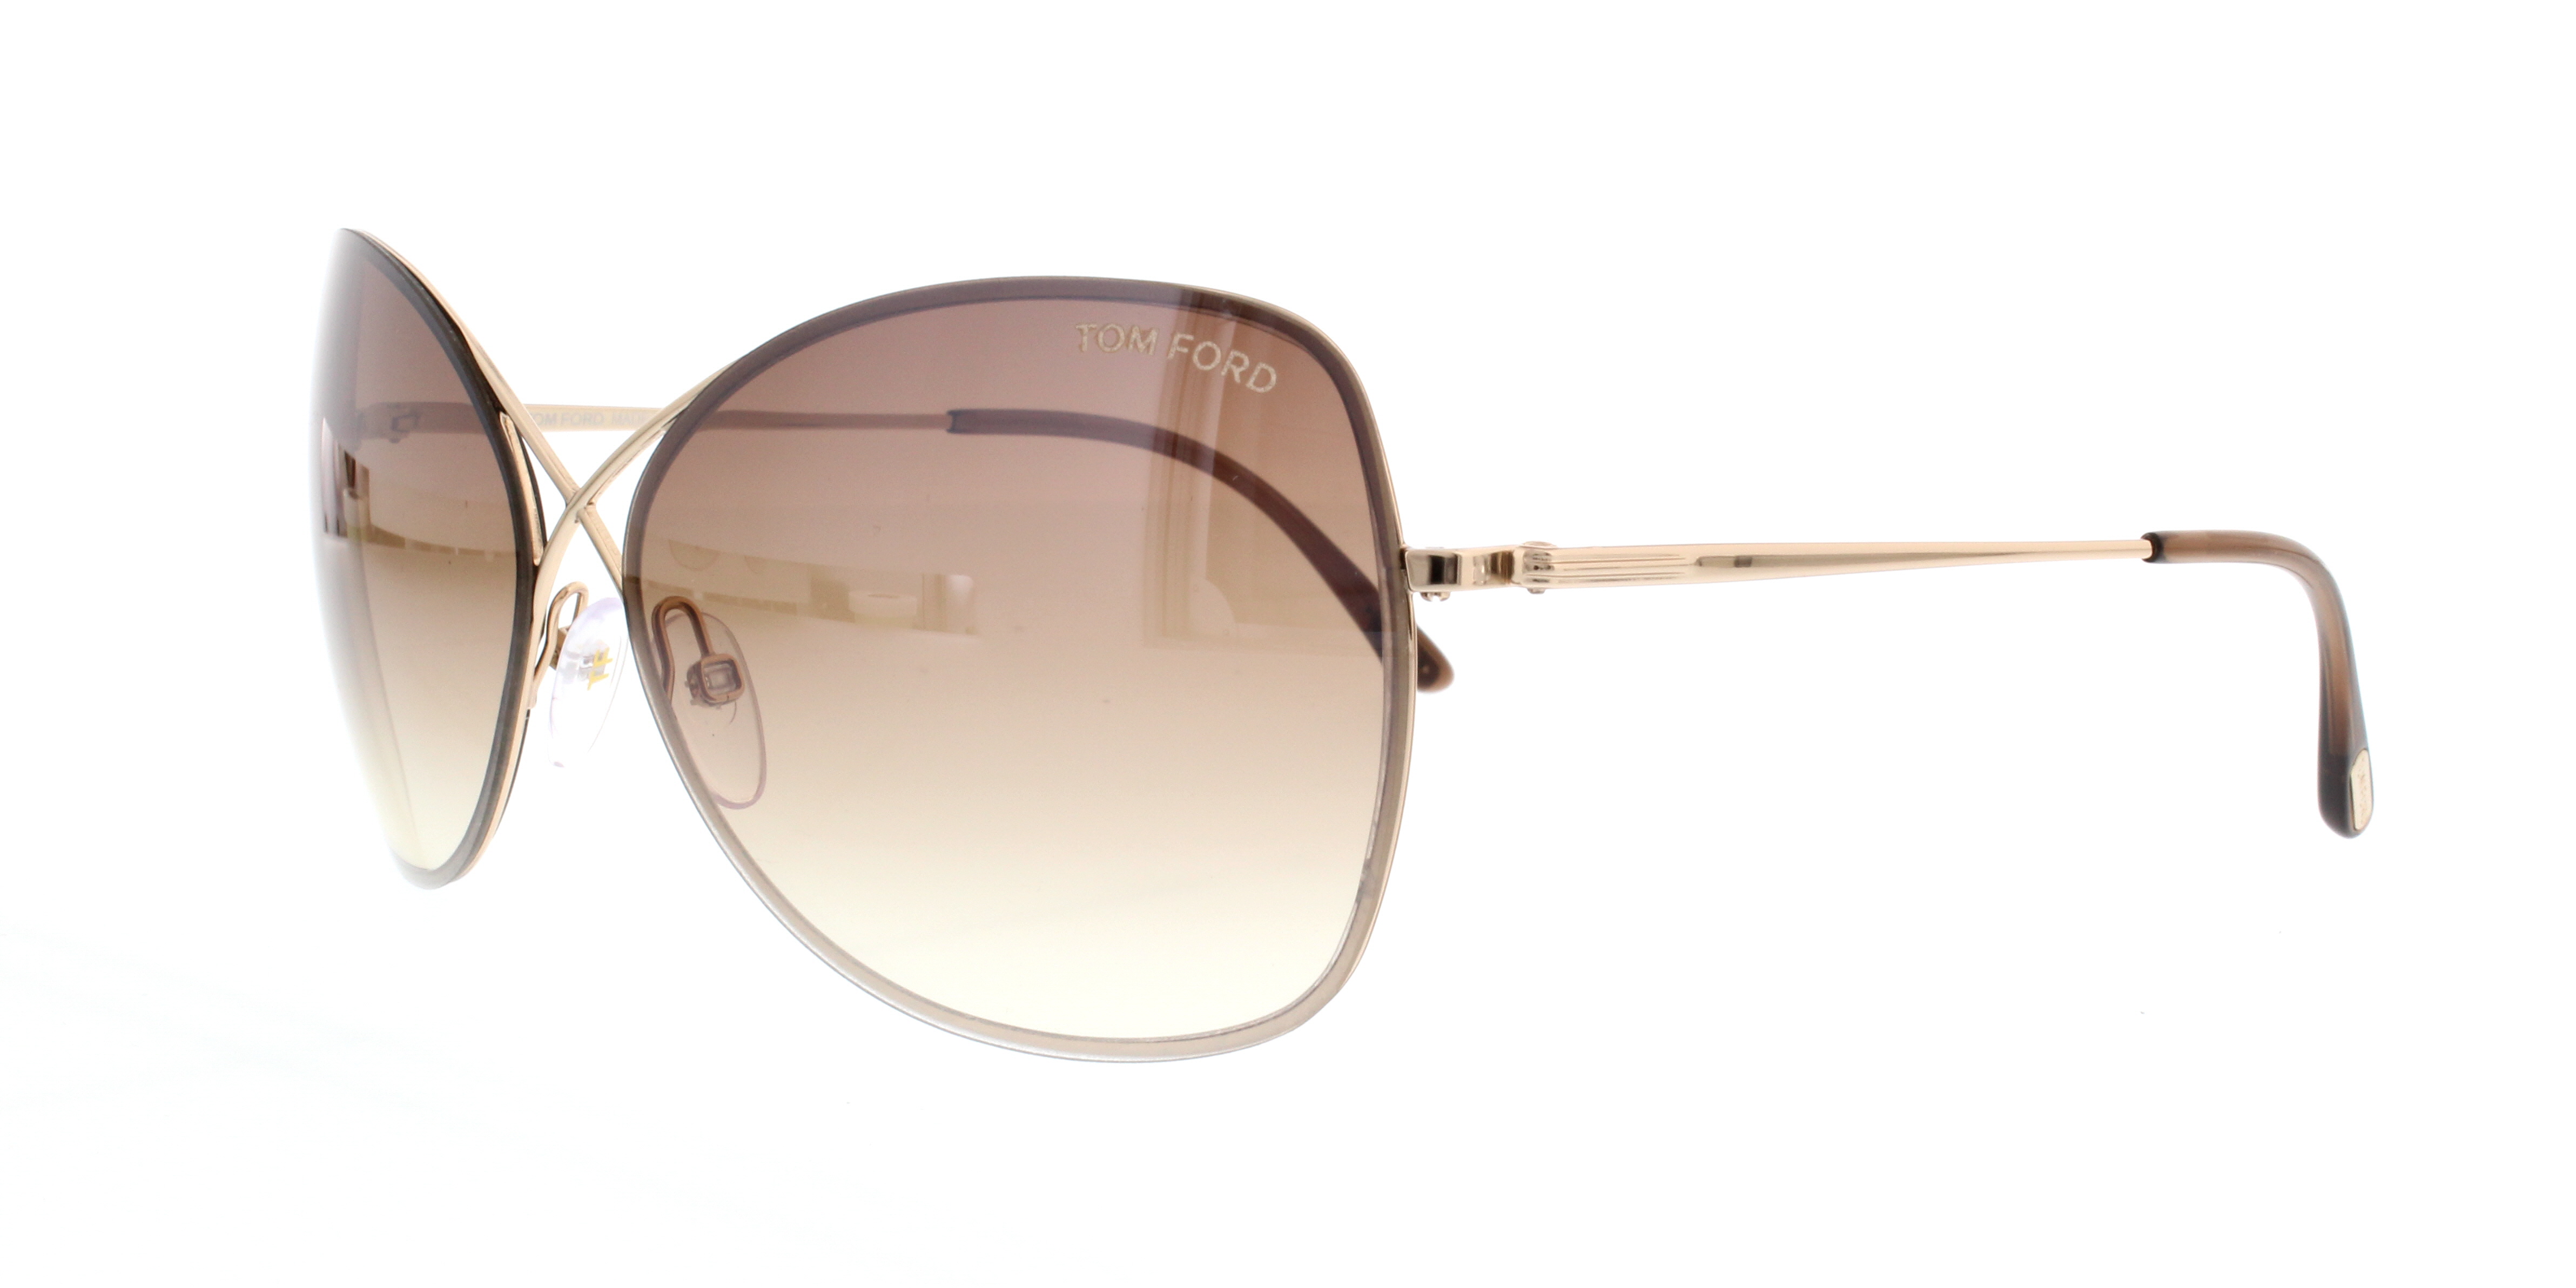 Designer Frames Outlet. Tom Ford Sunglasses FT0250 Colette